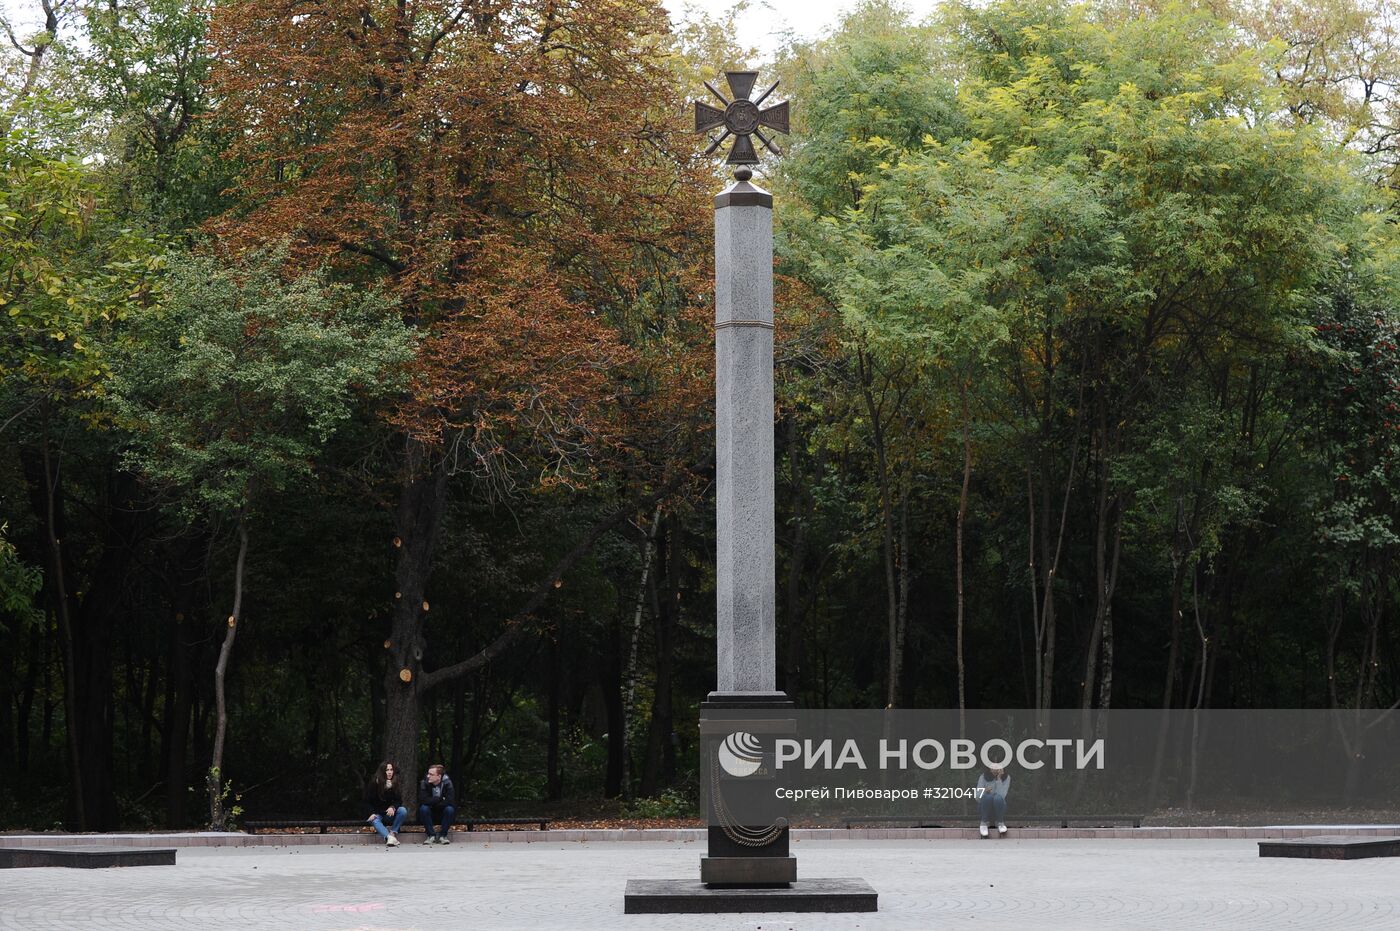 Памятник "Героям Донбасса" в Ростове-на-Дону